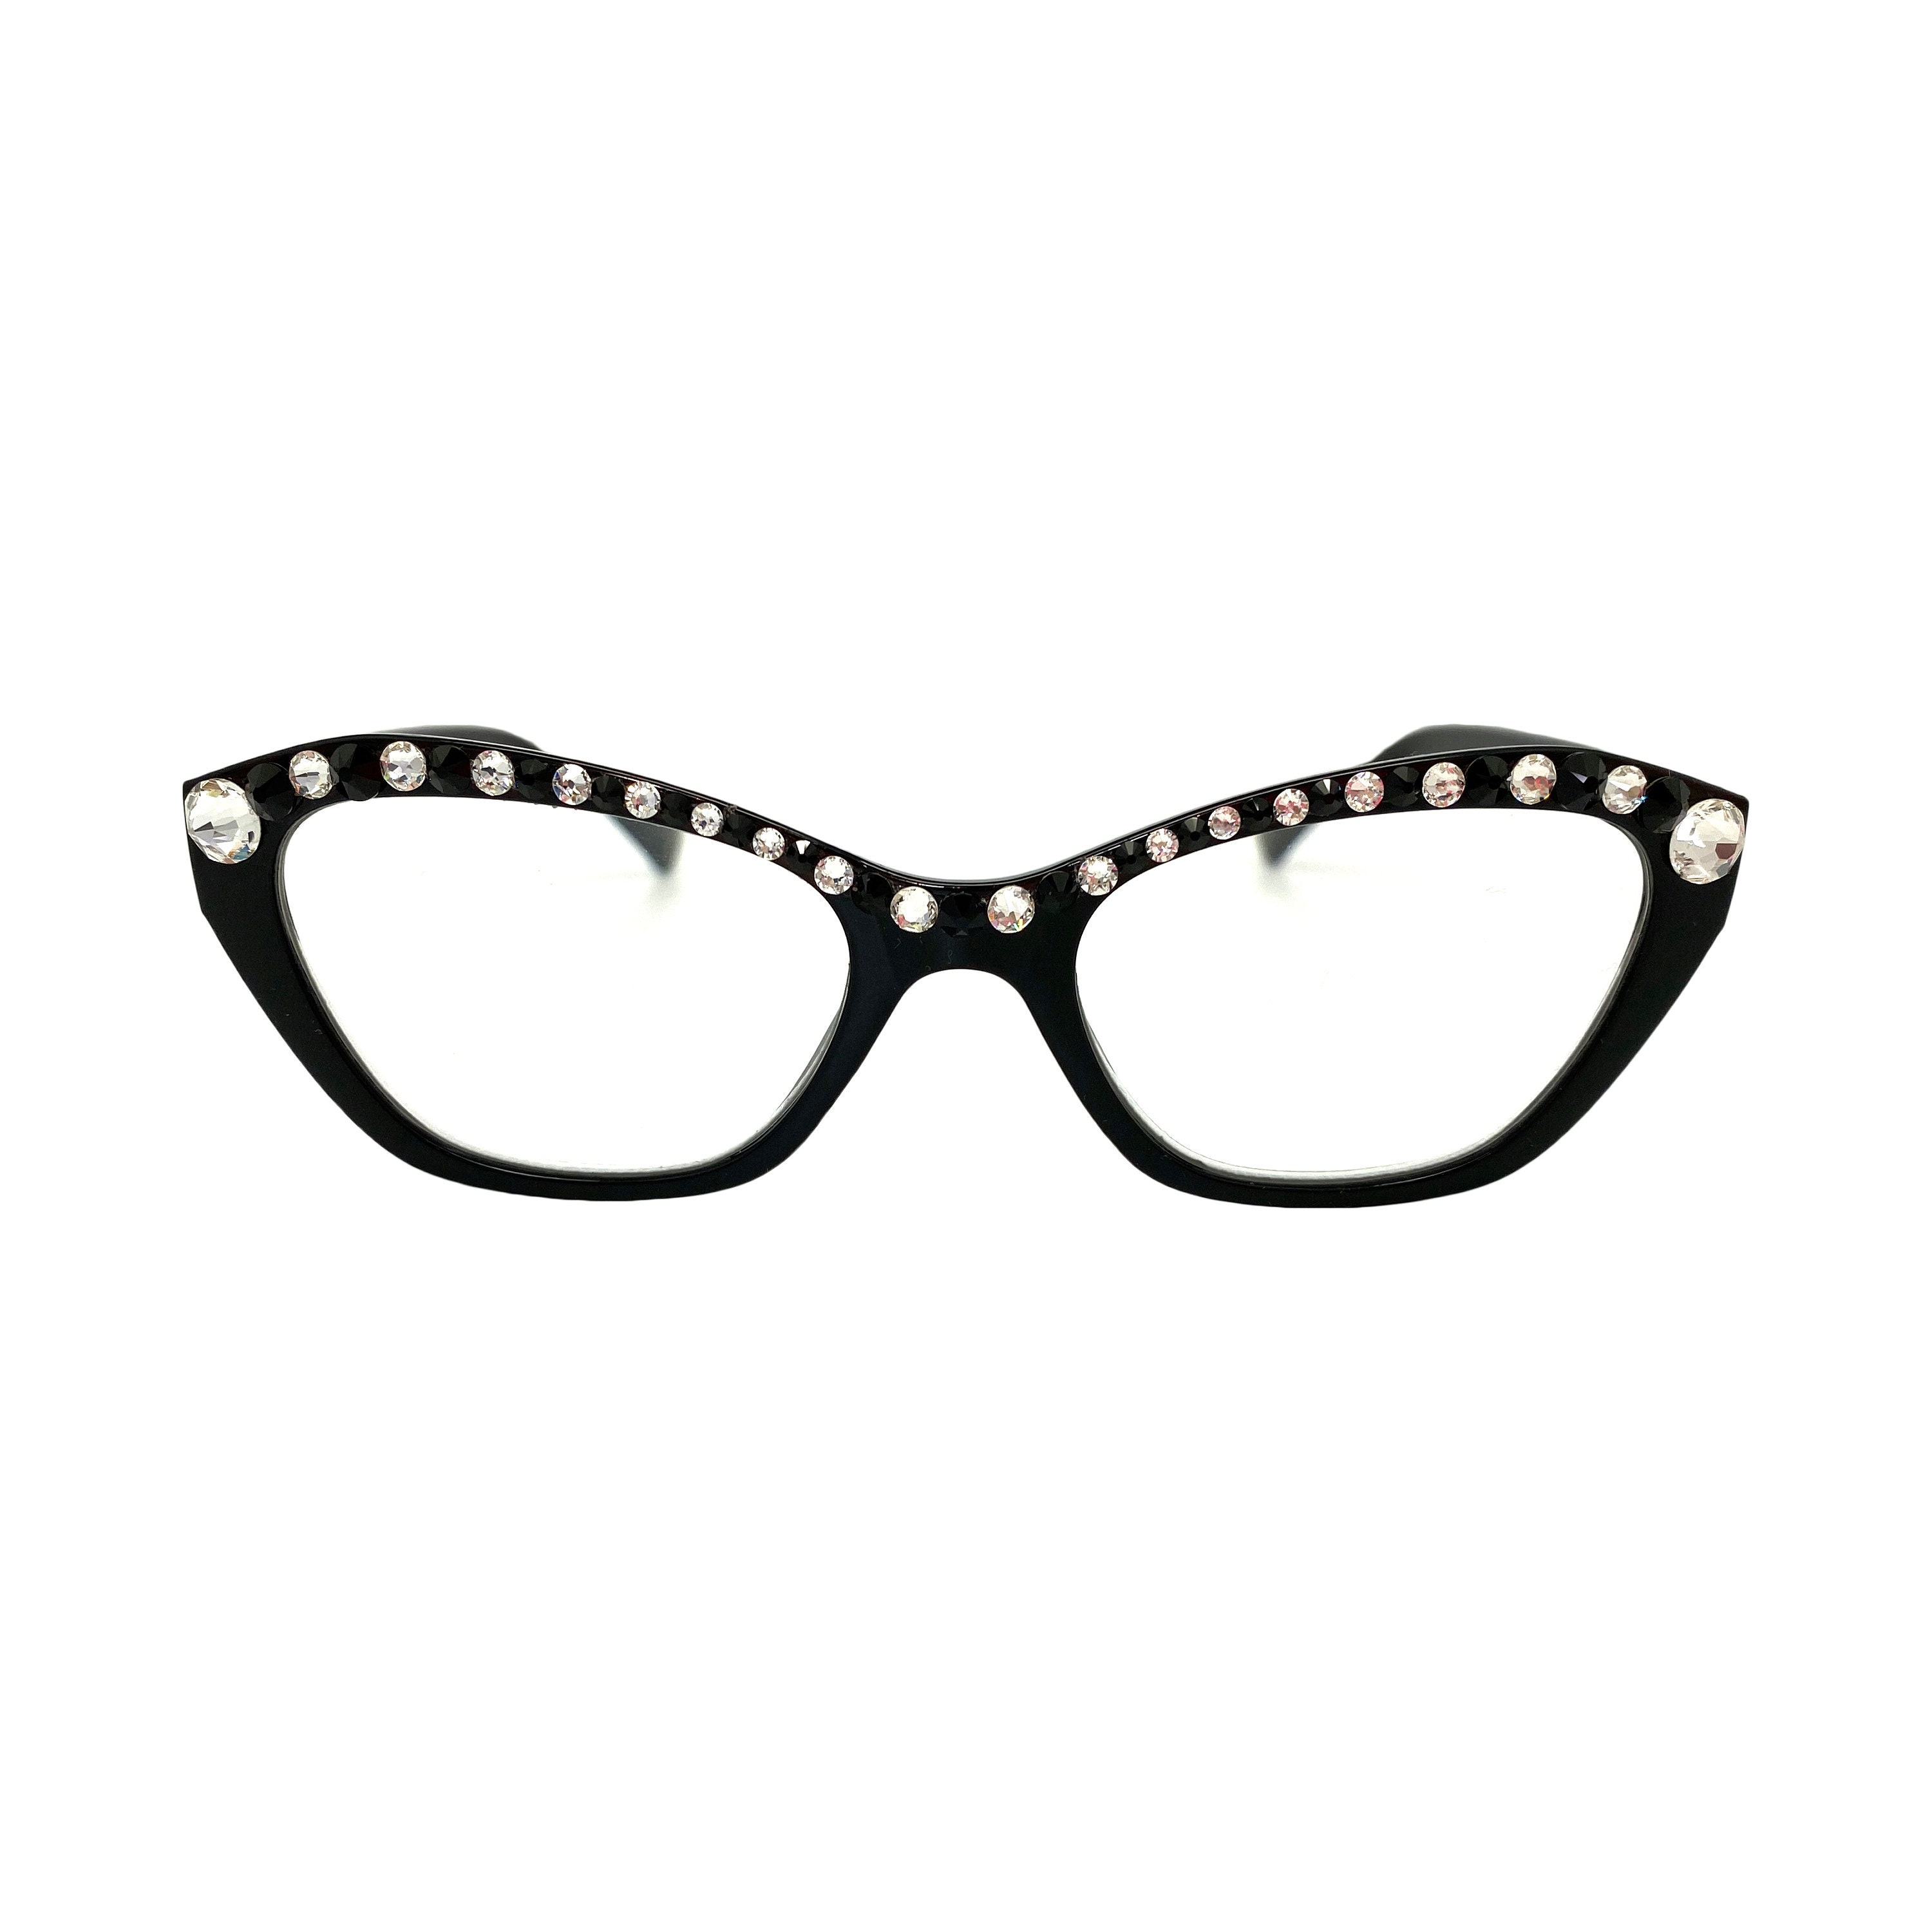 Black and White Swarovski Crystal Reading Glasses 1.00 1.25 | Etsy